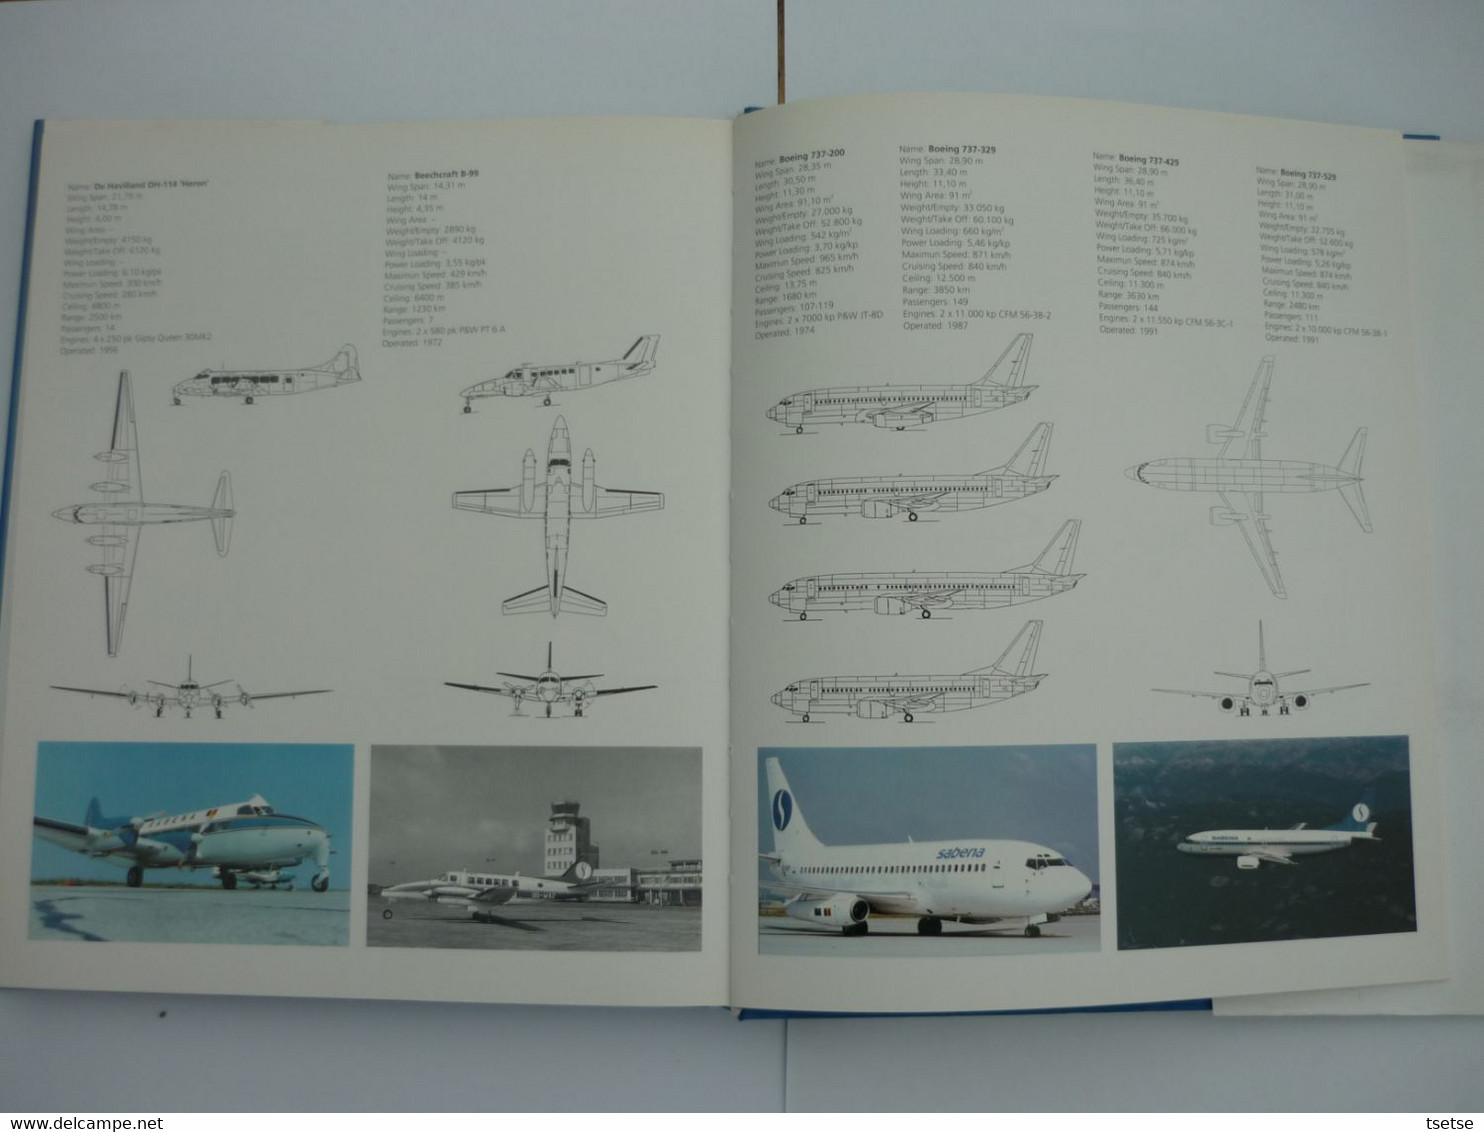 SABENA - 70 Jaar Luchtvaartpionier -1993 - Uitgeverij Lannoo/ Tielt - Advertenties